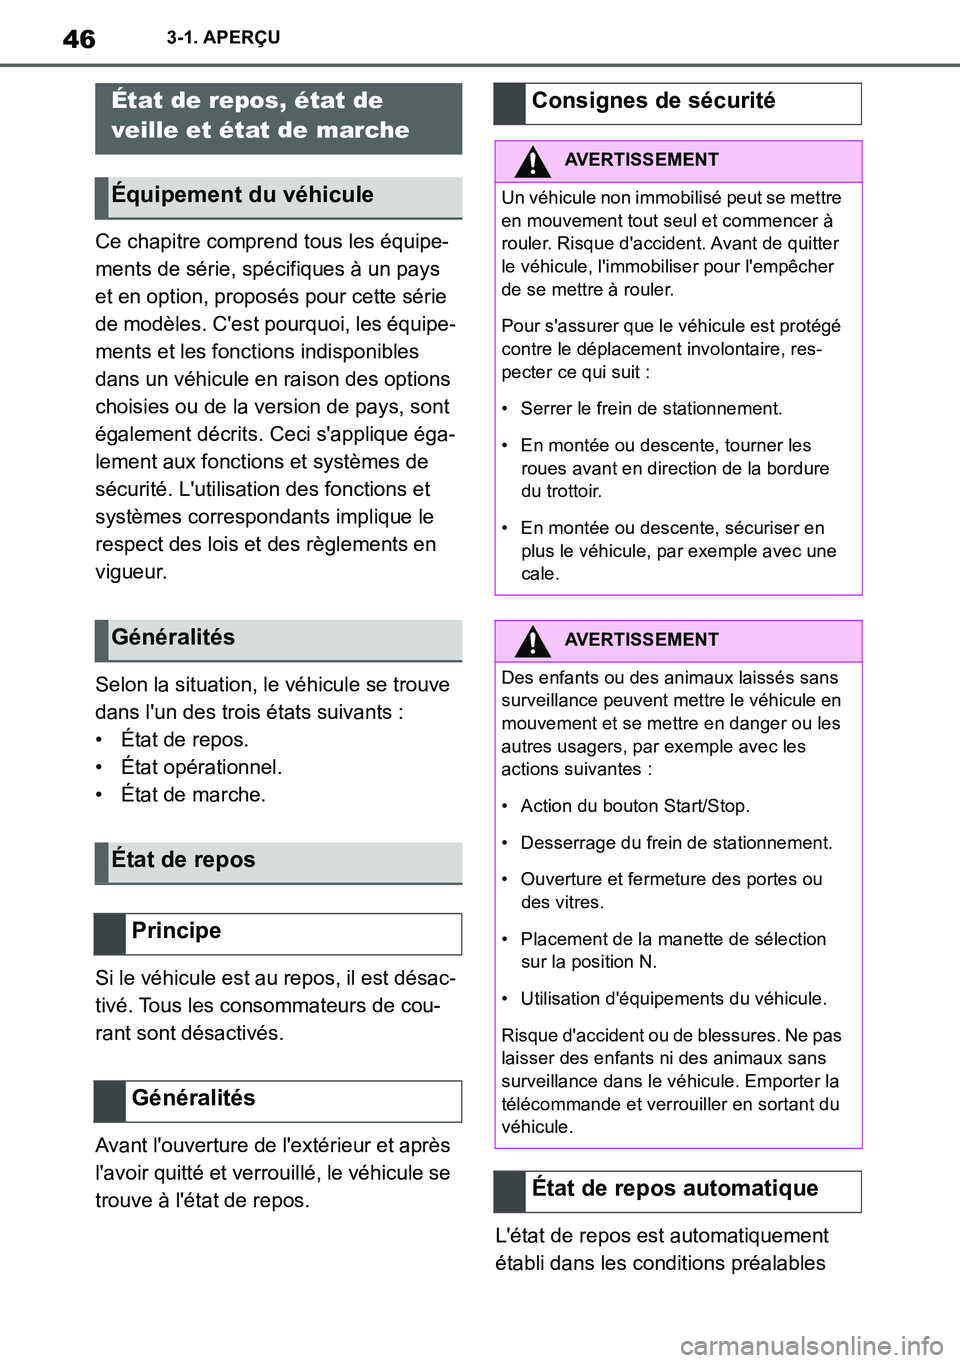 TOYOTA SUPRA 2020  Notices Demploi (in French) 46
Supra Owners Manual_EK
3-1. APERÇU
Ce chapitre comprend tous les équipe-
ments de série, spécifiques à un pays 
et en option, proposés pour cette série 
de modèles. Cest pourquoi, les éq